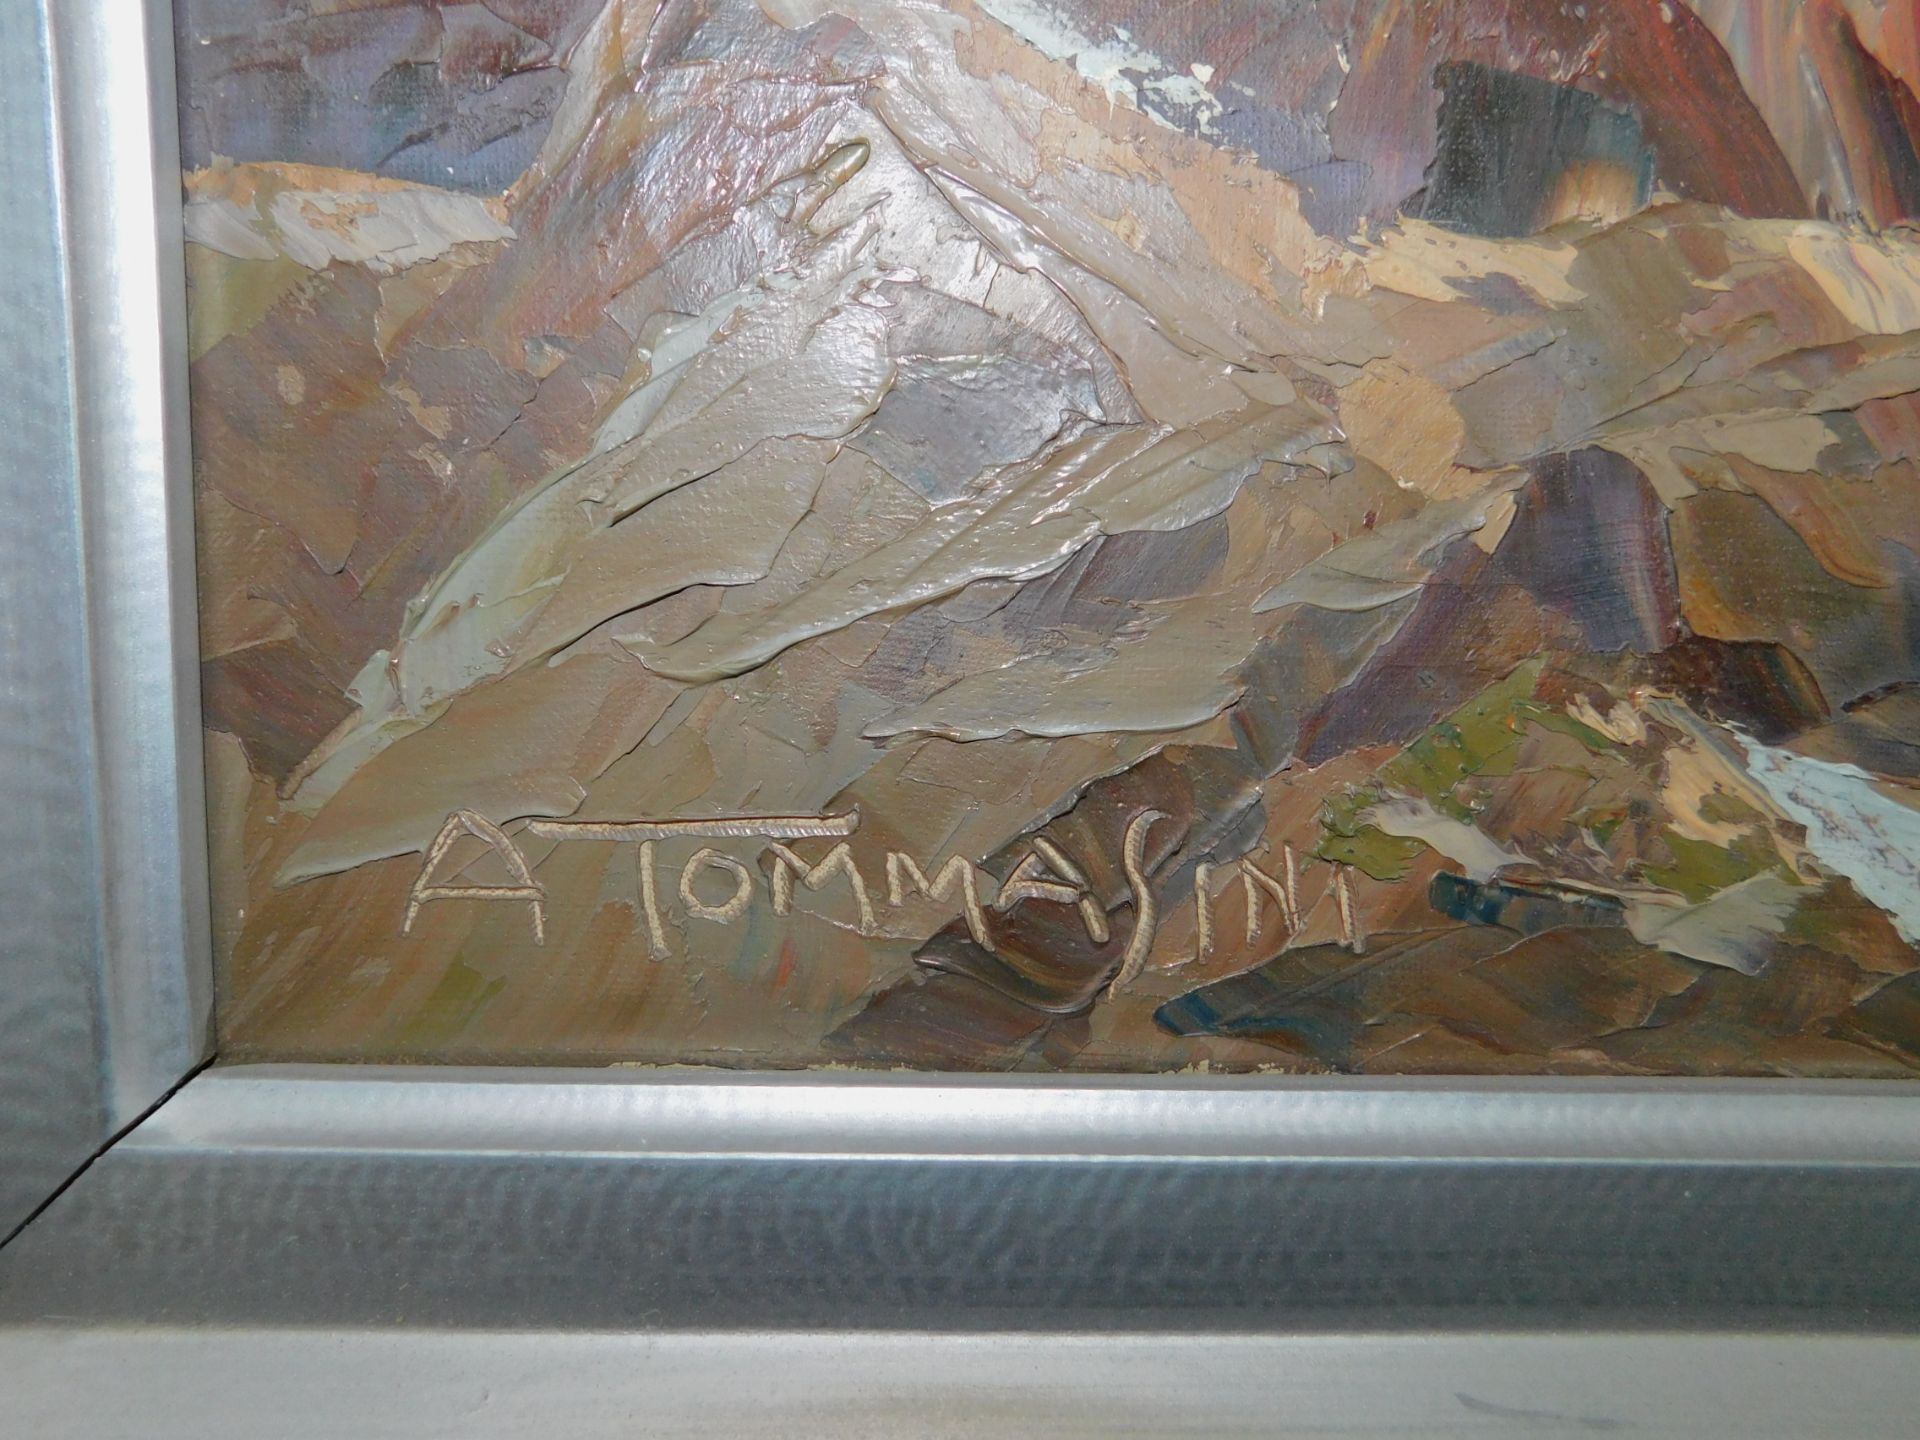 Augusto Tommasini, Italien 19./20.Jh. "Dolomiten" sig., Öl/Leinwand, 65 x 75 cm, m.R. - Bild 3 aus 4